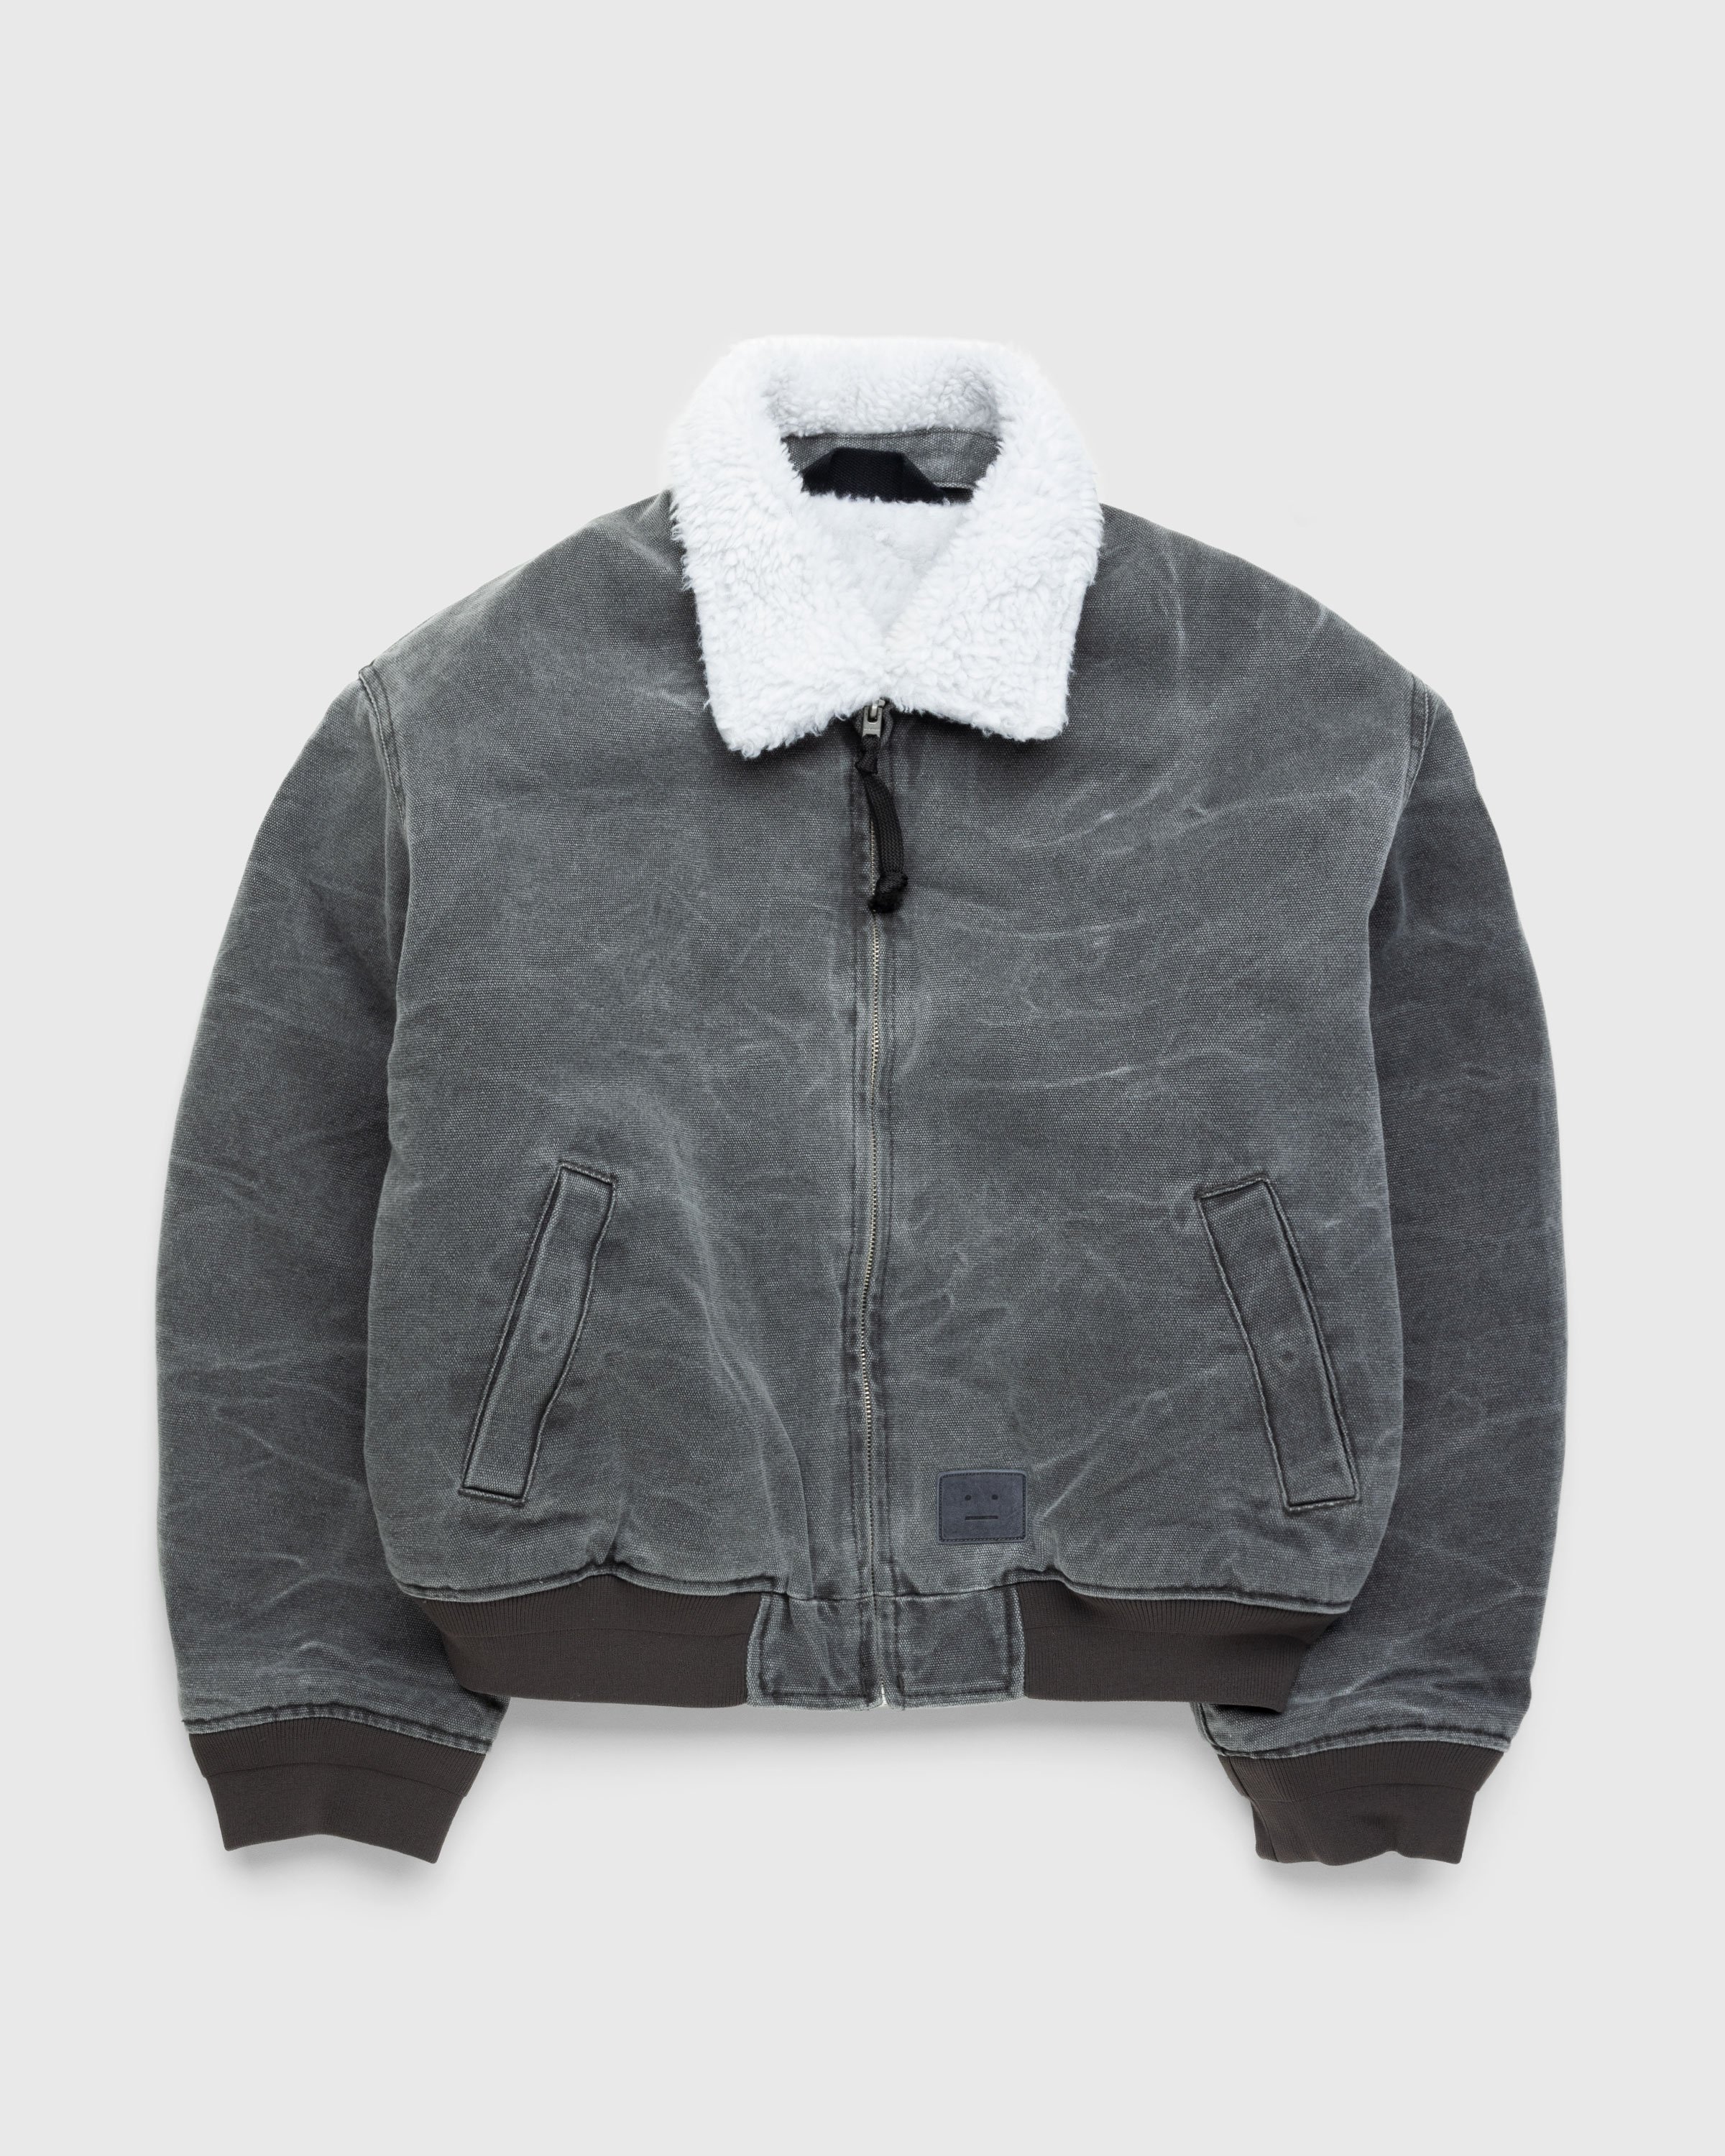 Acne Studios - Cotton Canvas Bomber Jacket Grey - Clothing - Grey - Image 1